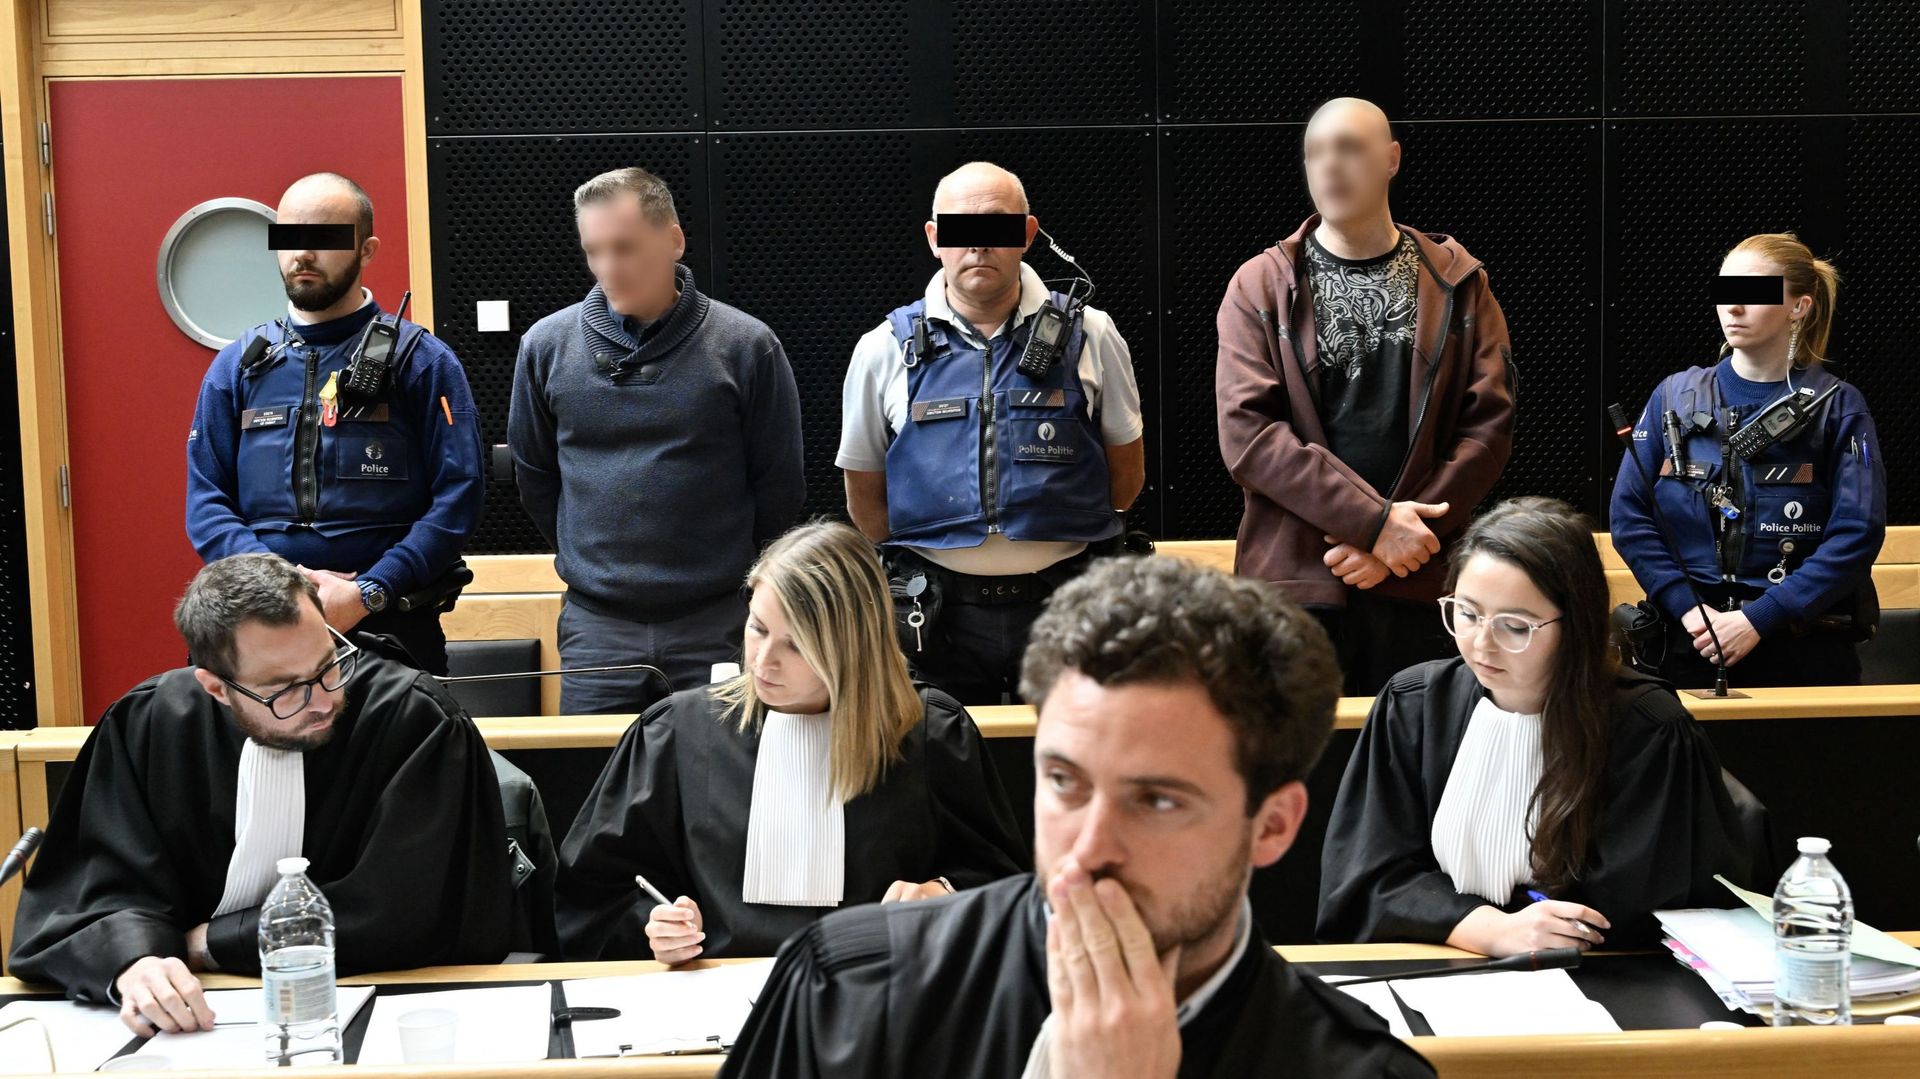 Johnny Vanhoutte et Claudy Putman photographiés lors de la constitution du jury devant la Cour d'assises de la province de Hainaut à Mons le mercredi 17 mai 2023. Ils sont accusés de plusieurs vols avec violence, avec plusieurs circonstances aggravantes d